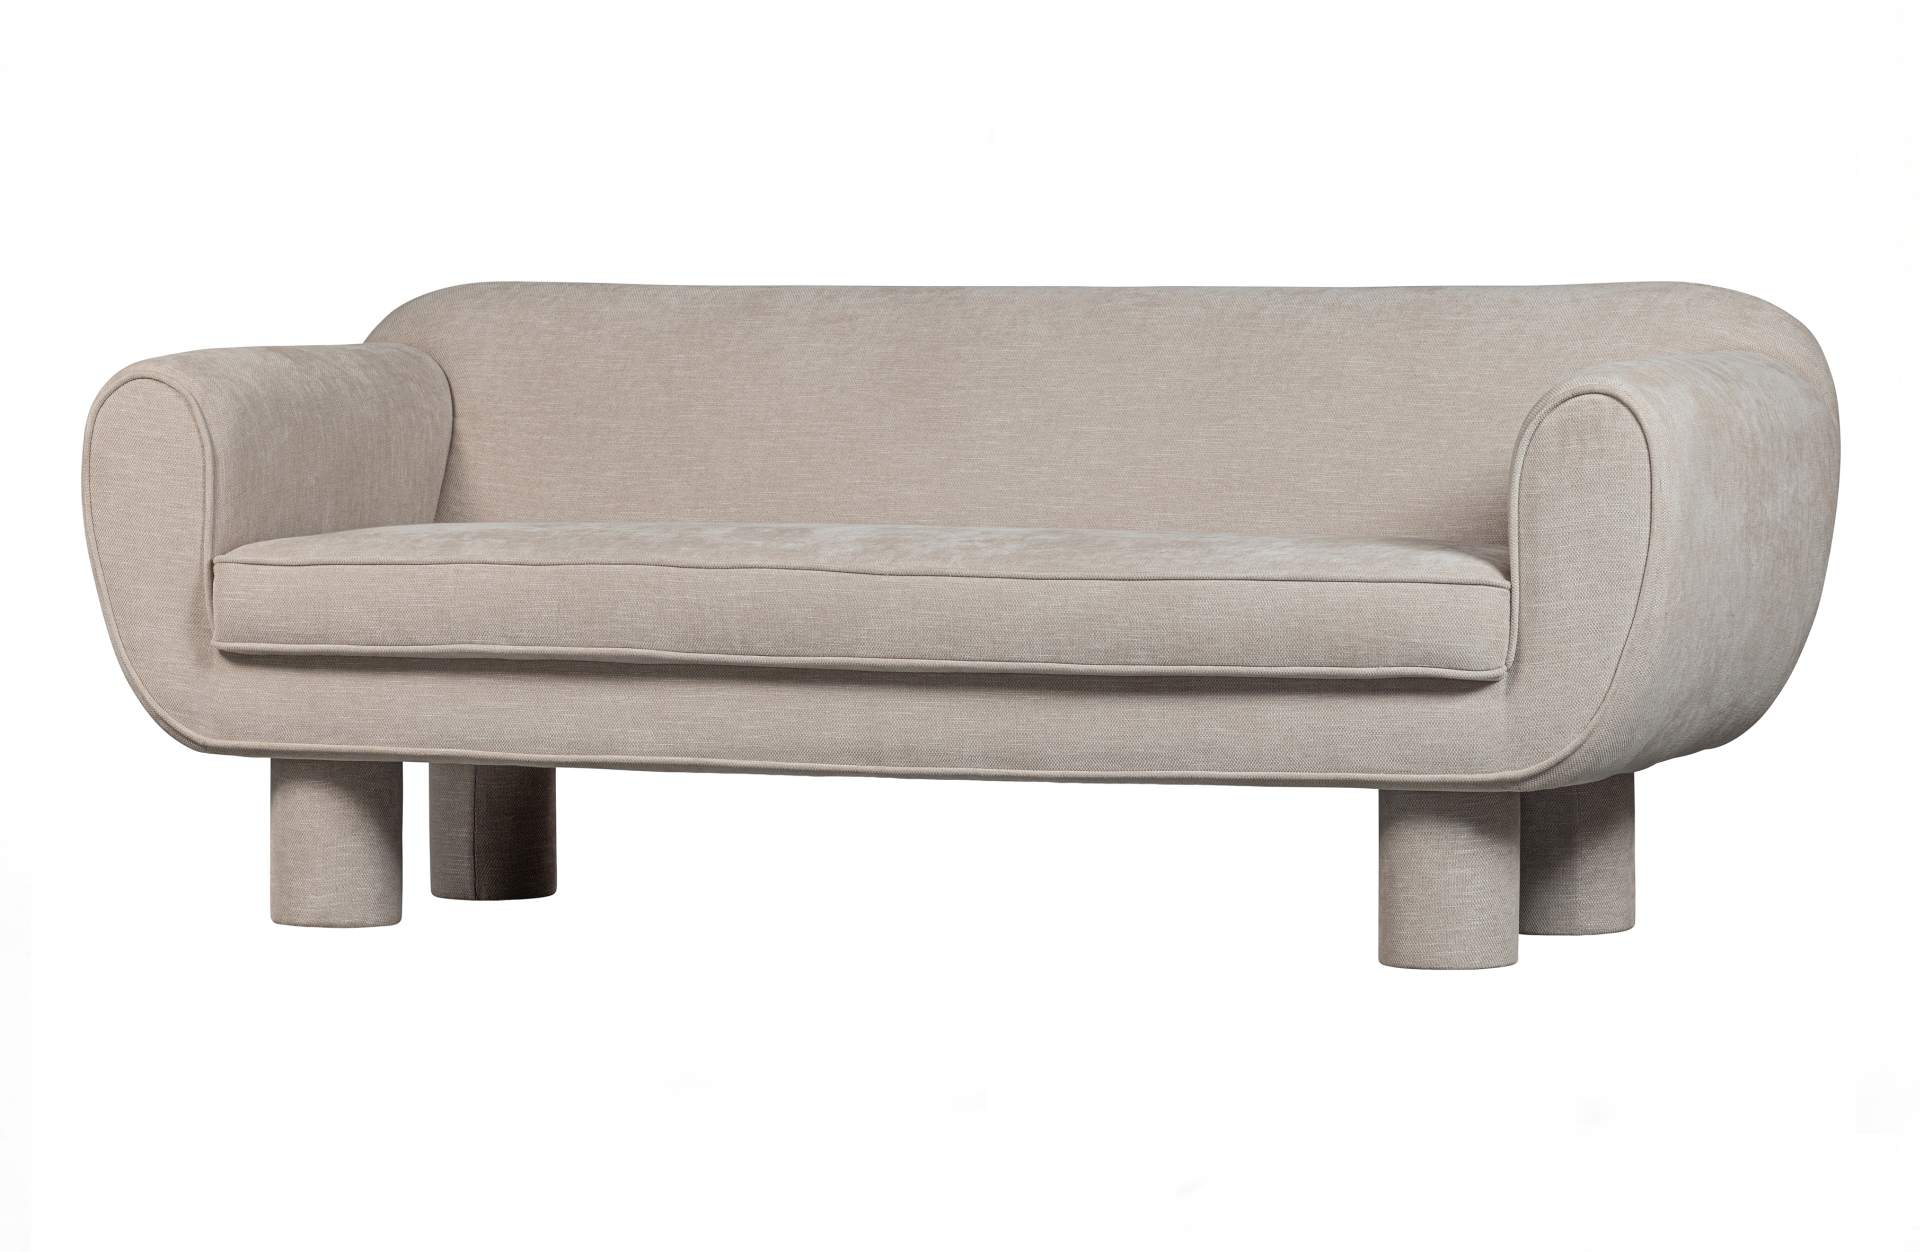 Das 2-Sitzer Sofa Bodi überzeugt mit seinem modernen Design. Gefertigt wurde es aus Kunststofffasern, welche einen einen grauen Farbton besitzen. Das Sofa hat eine Breite von 186 cm und eine Sitzhöhe von 44 cm.